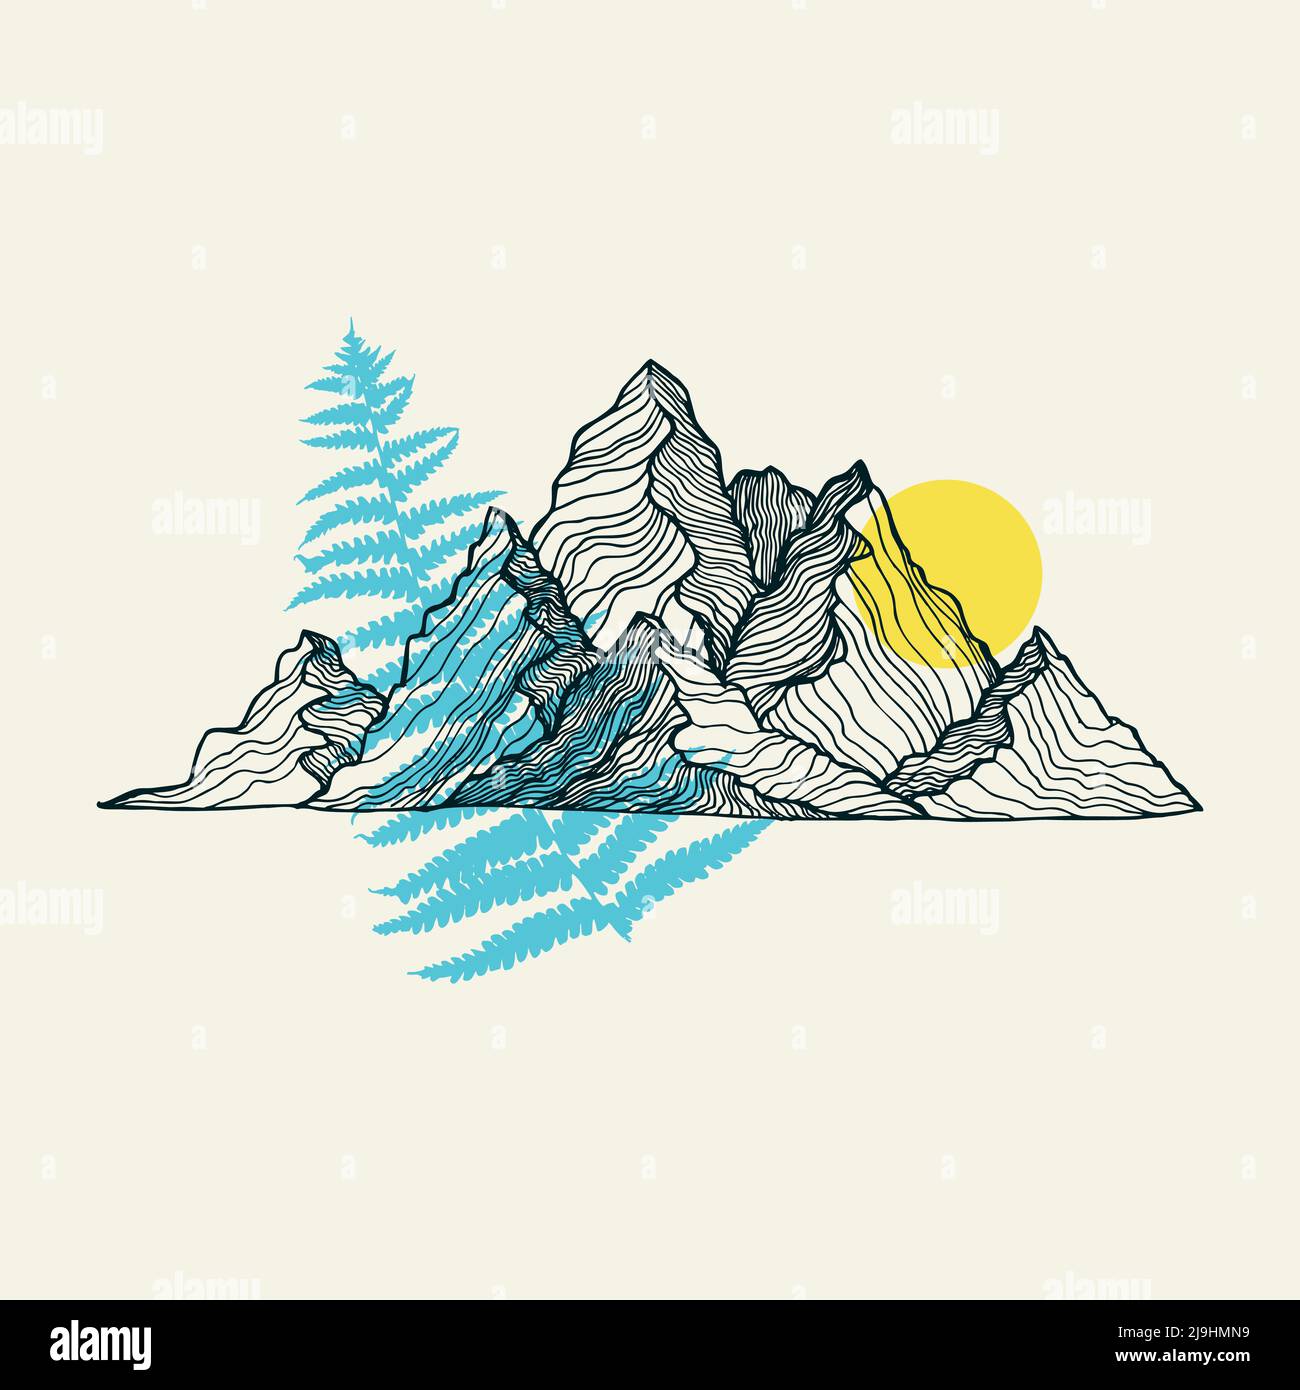 Vektorgrafik für Berge, Sonne und Farnlinie. Vektor-Illustration für Textildrucke, Karten, Design, Logo. Stock Vektor